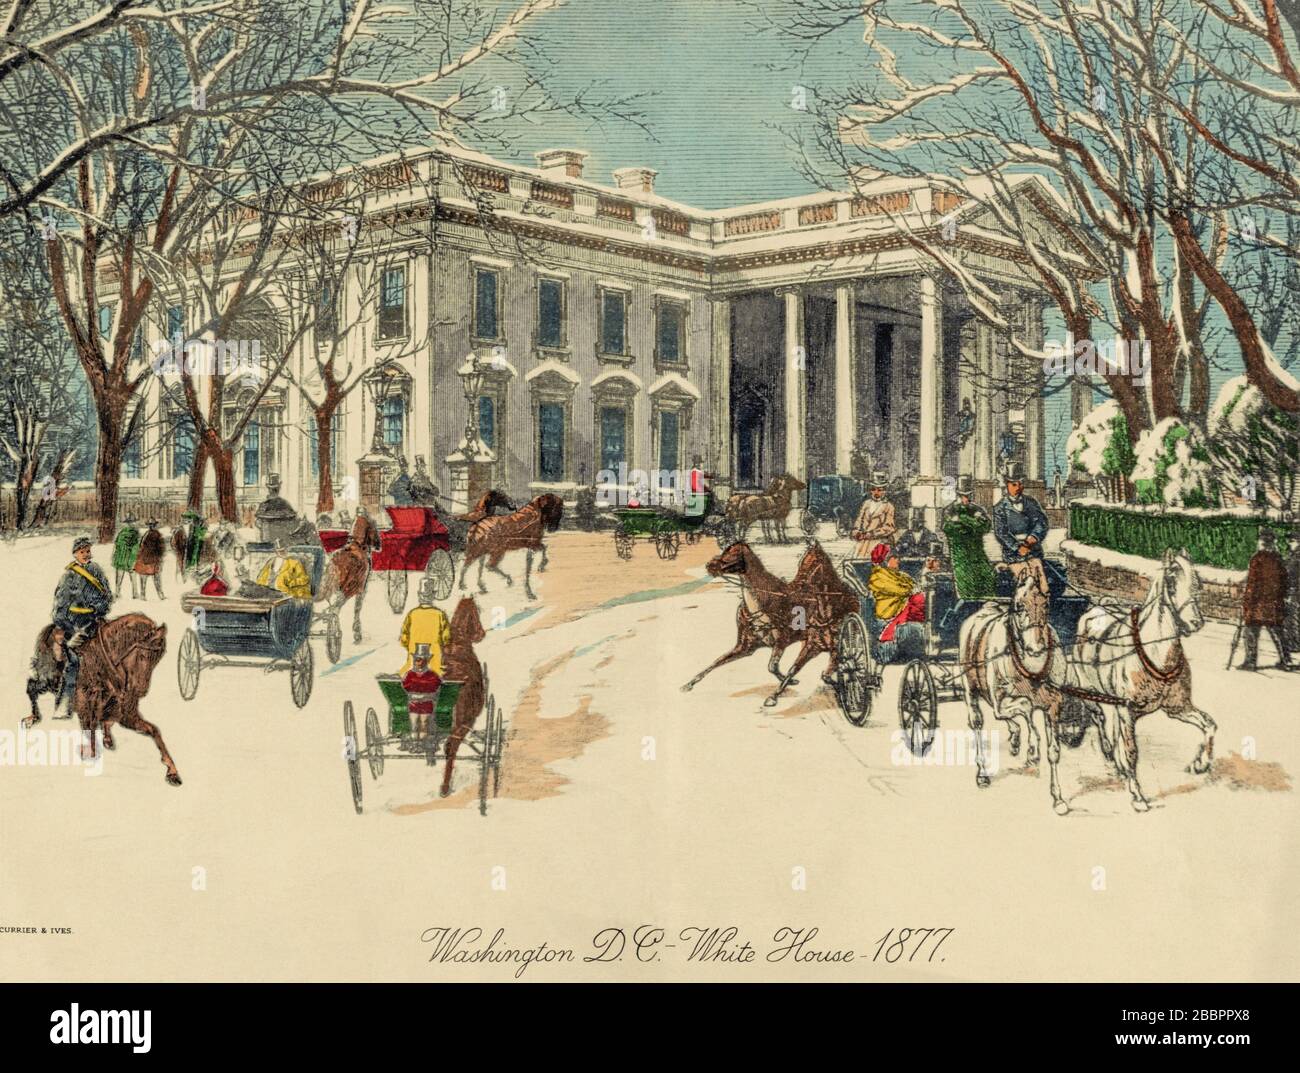 The White House, Washington D.C., États-Unis d'Amérique. Des calèches et des piétons près du portique nord à l'hiver 1877. Après une œuvre d'un artiste inconnu publiée par Currier & Ives. Banque D'Images